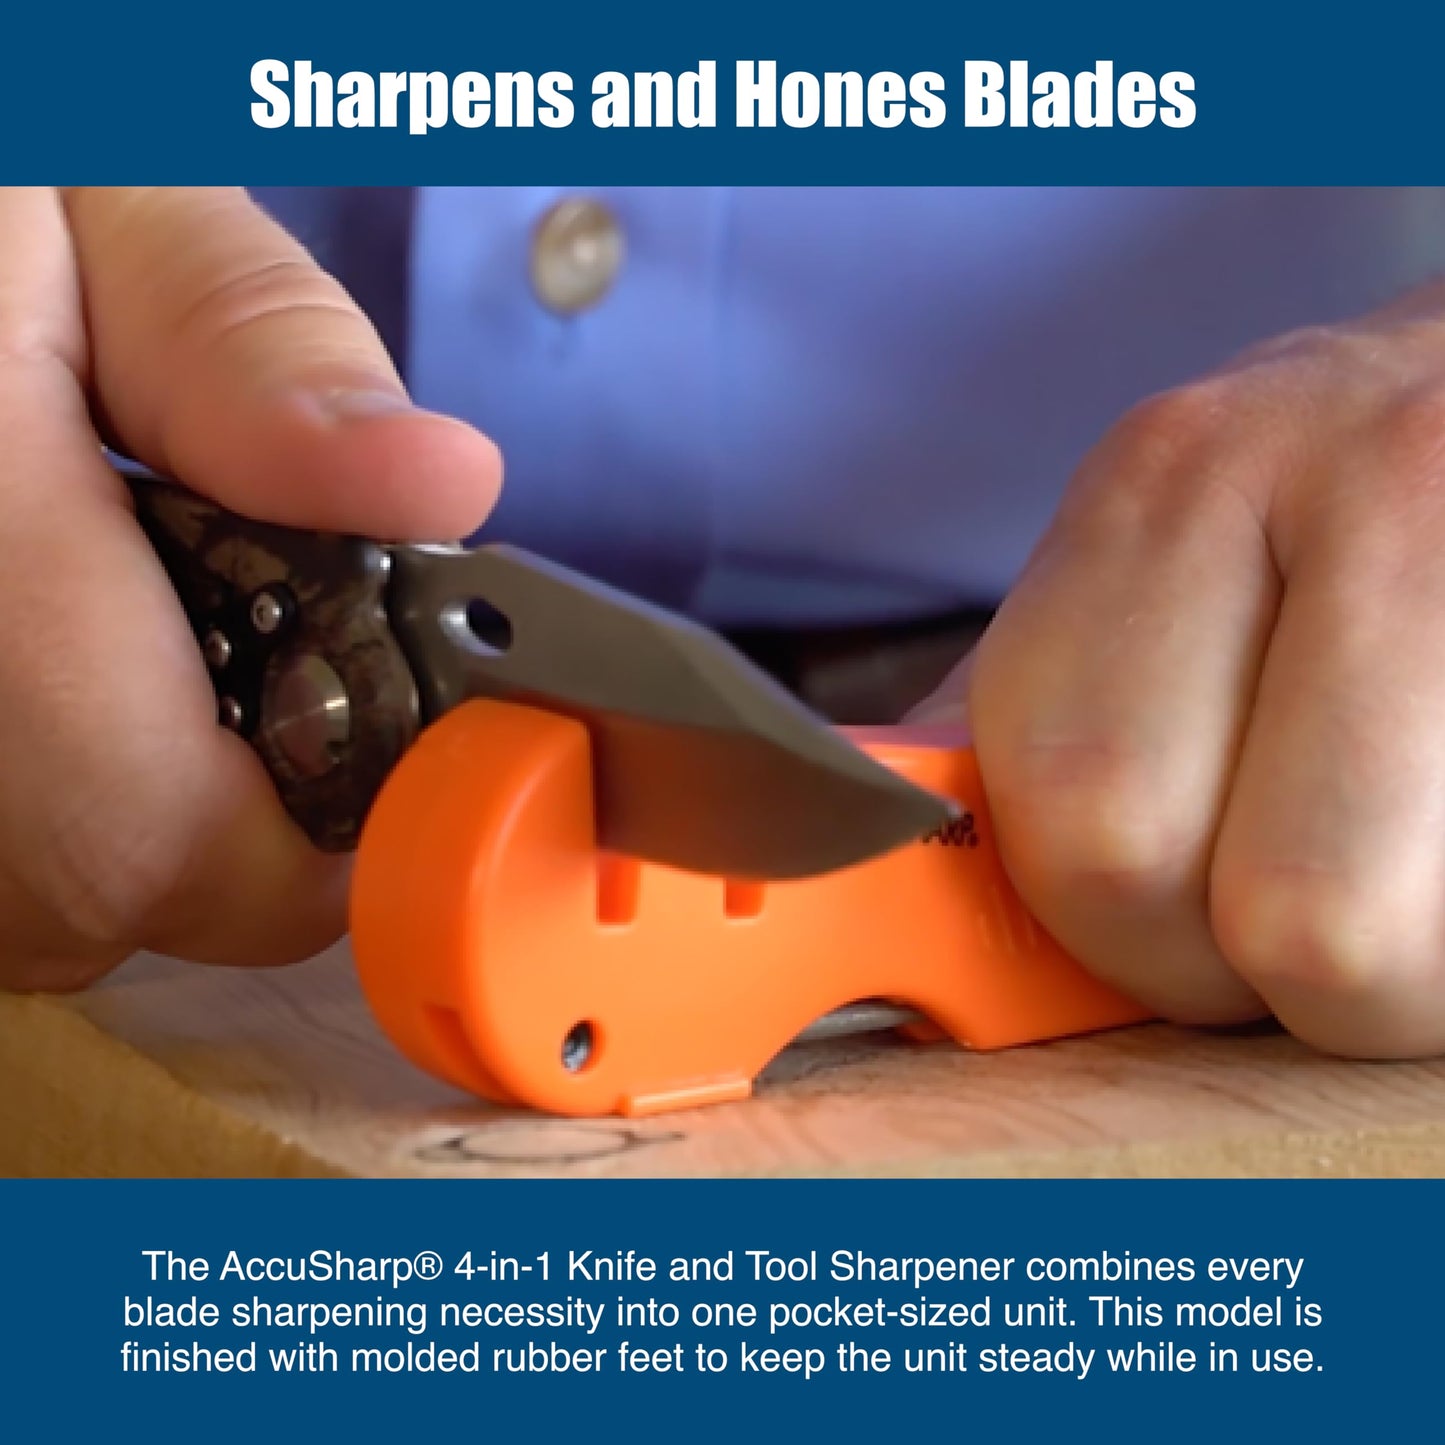 AccuSharp 4-in-1 Knife and Tool Sharpener (Blaze Orange)